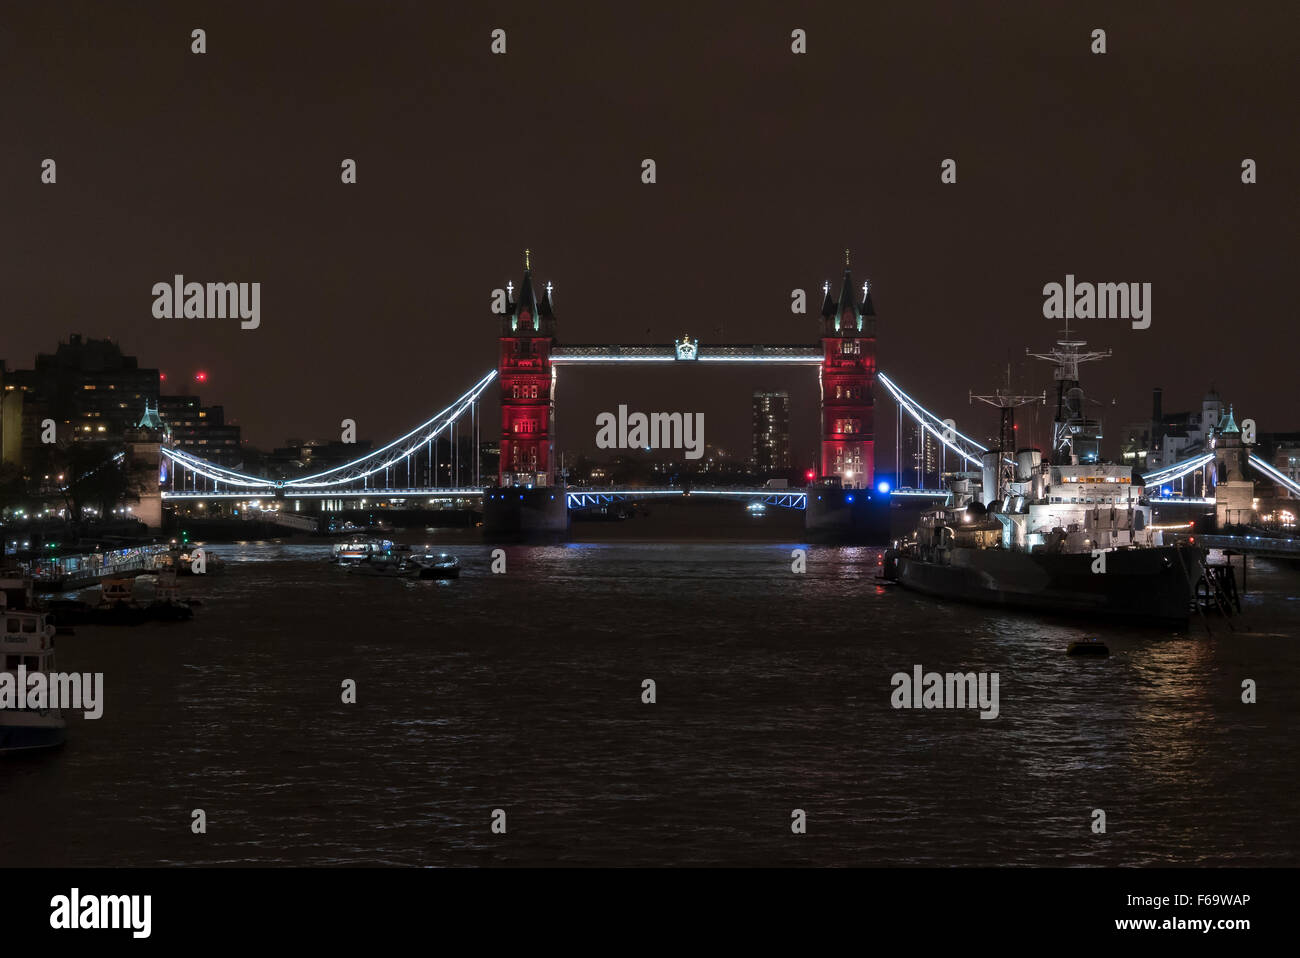 14 novembre 2015 : London's Tower Bridge est allumé en bleu, blanc et rouge à l'appui avec les attaques de Paris le 13 novembre Banque D'Images